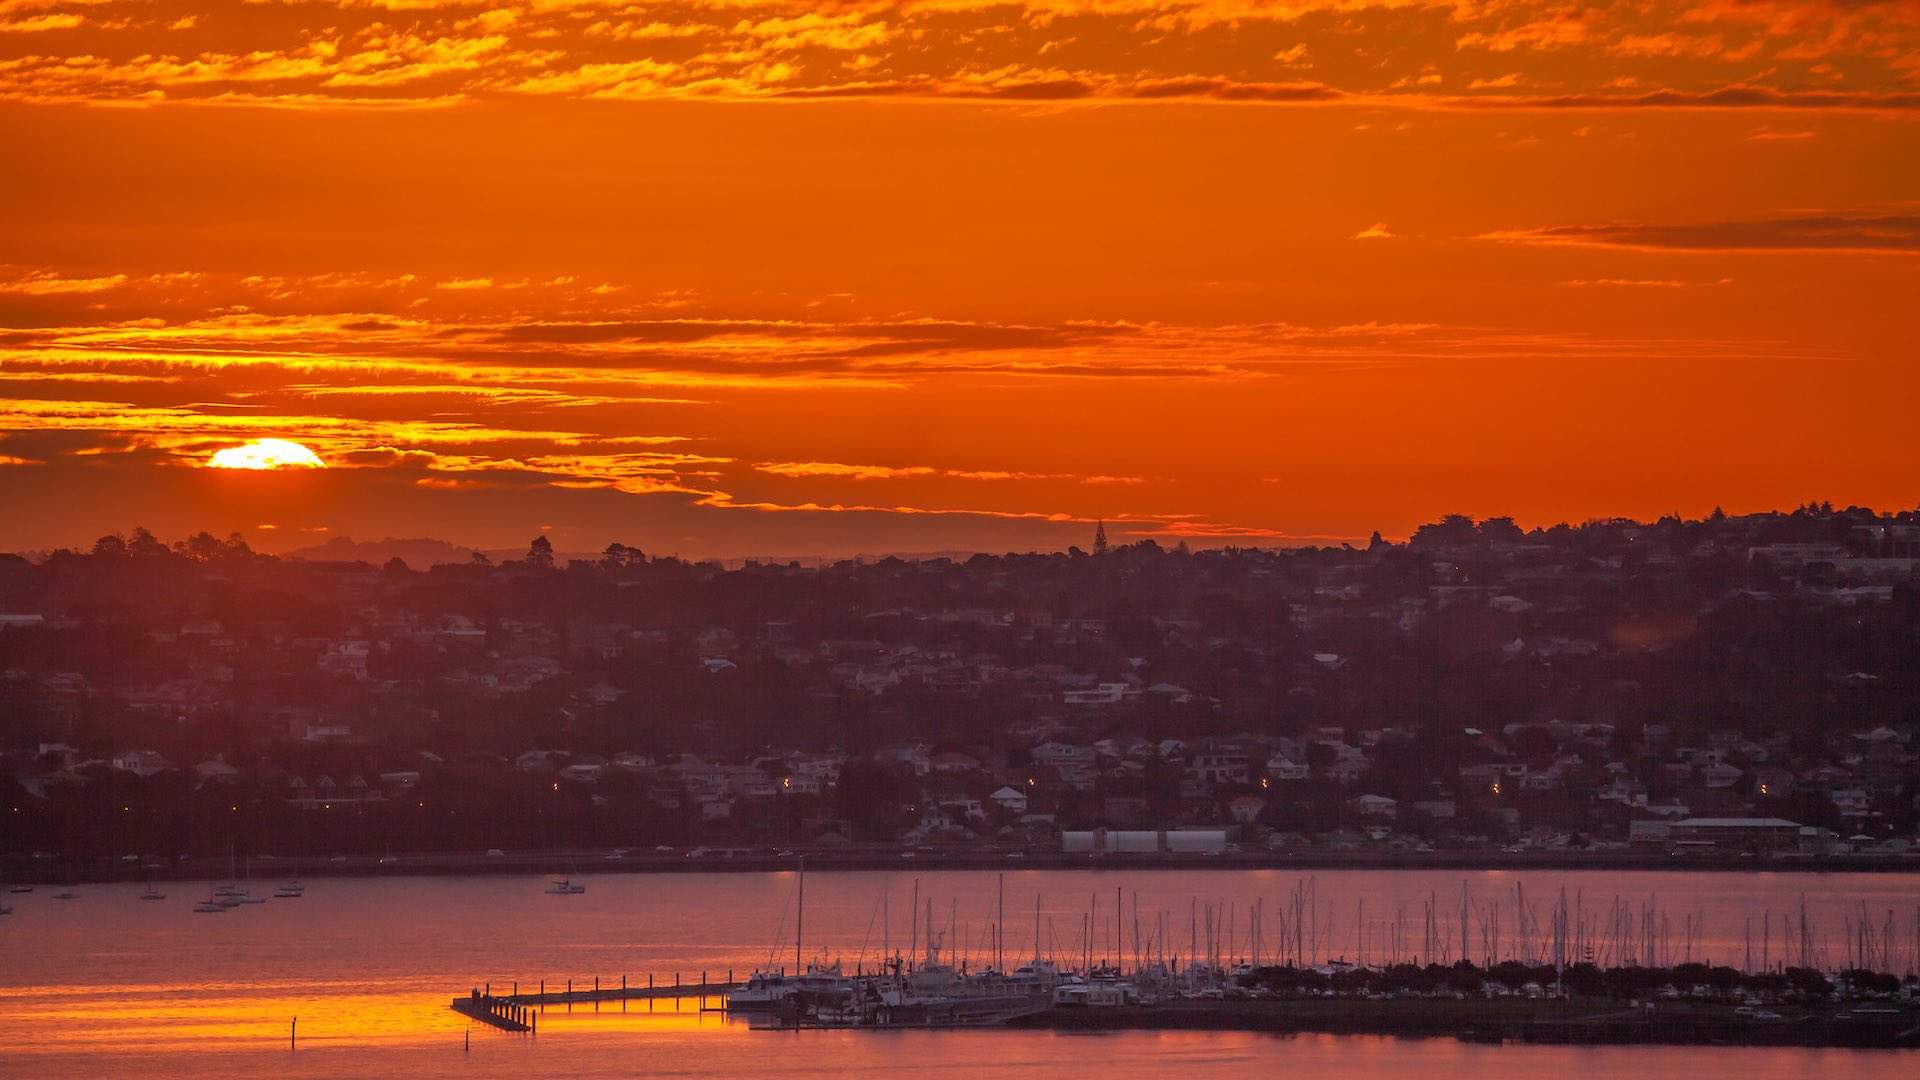 Bayswater Marina Auckland at sunset